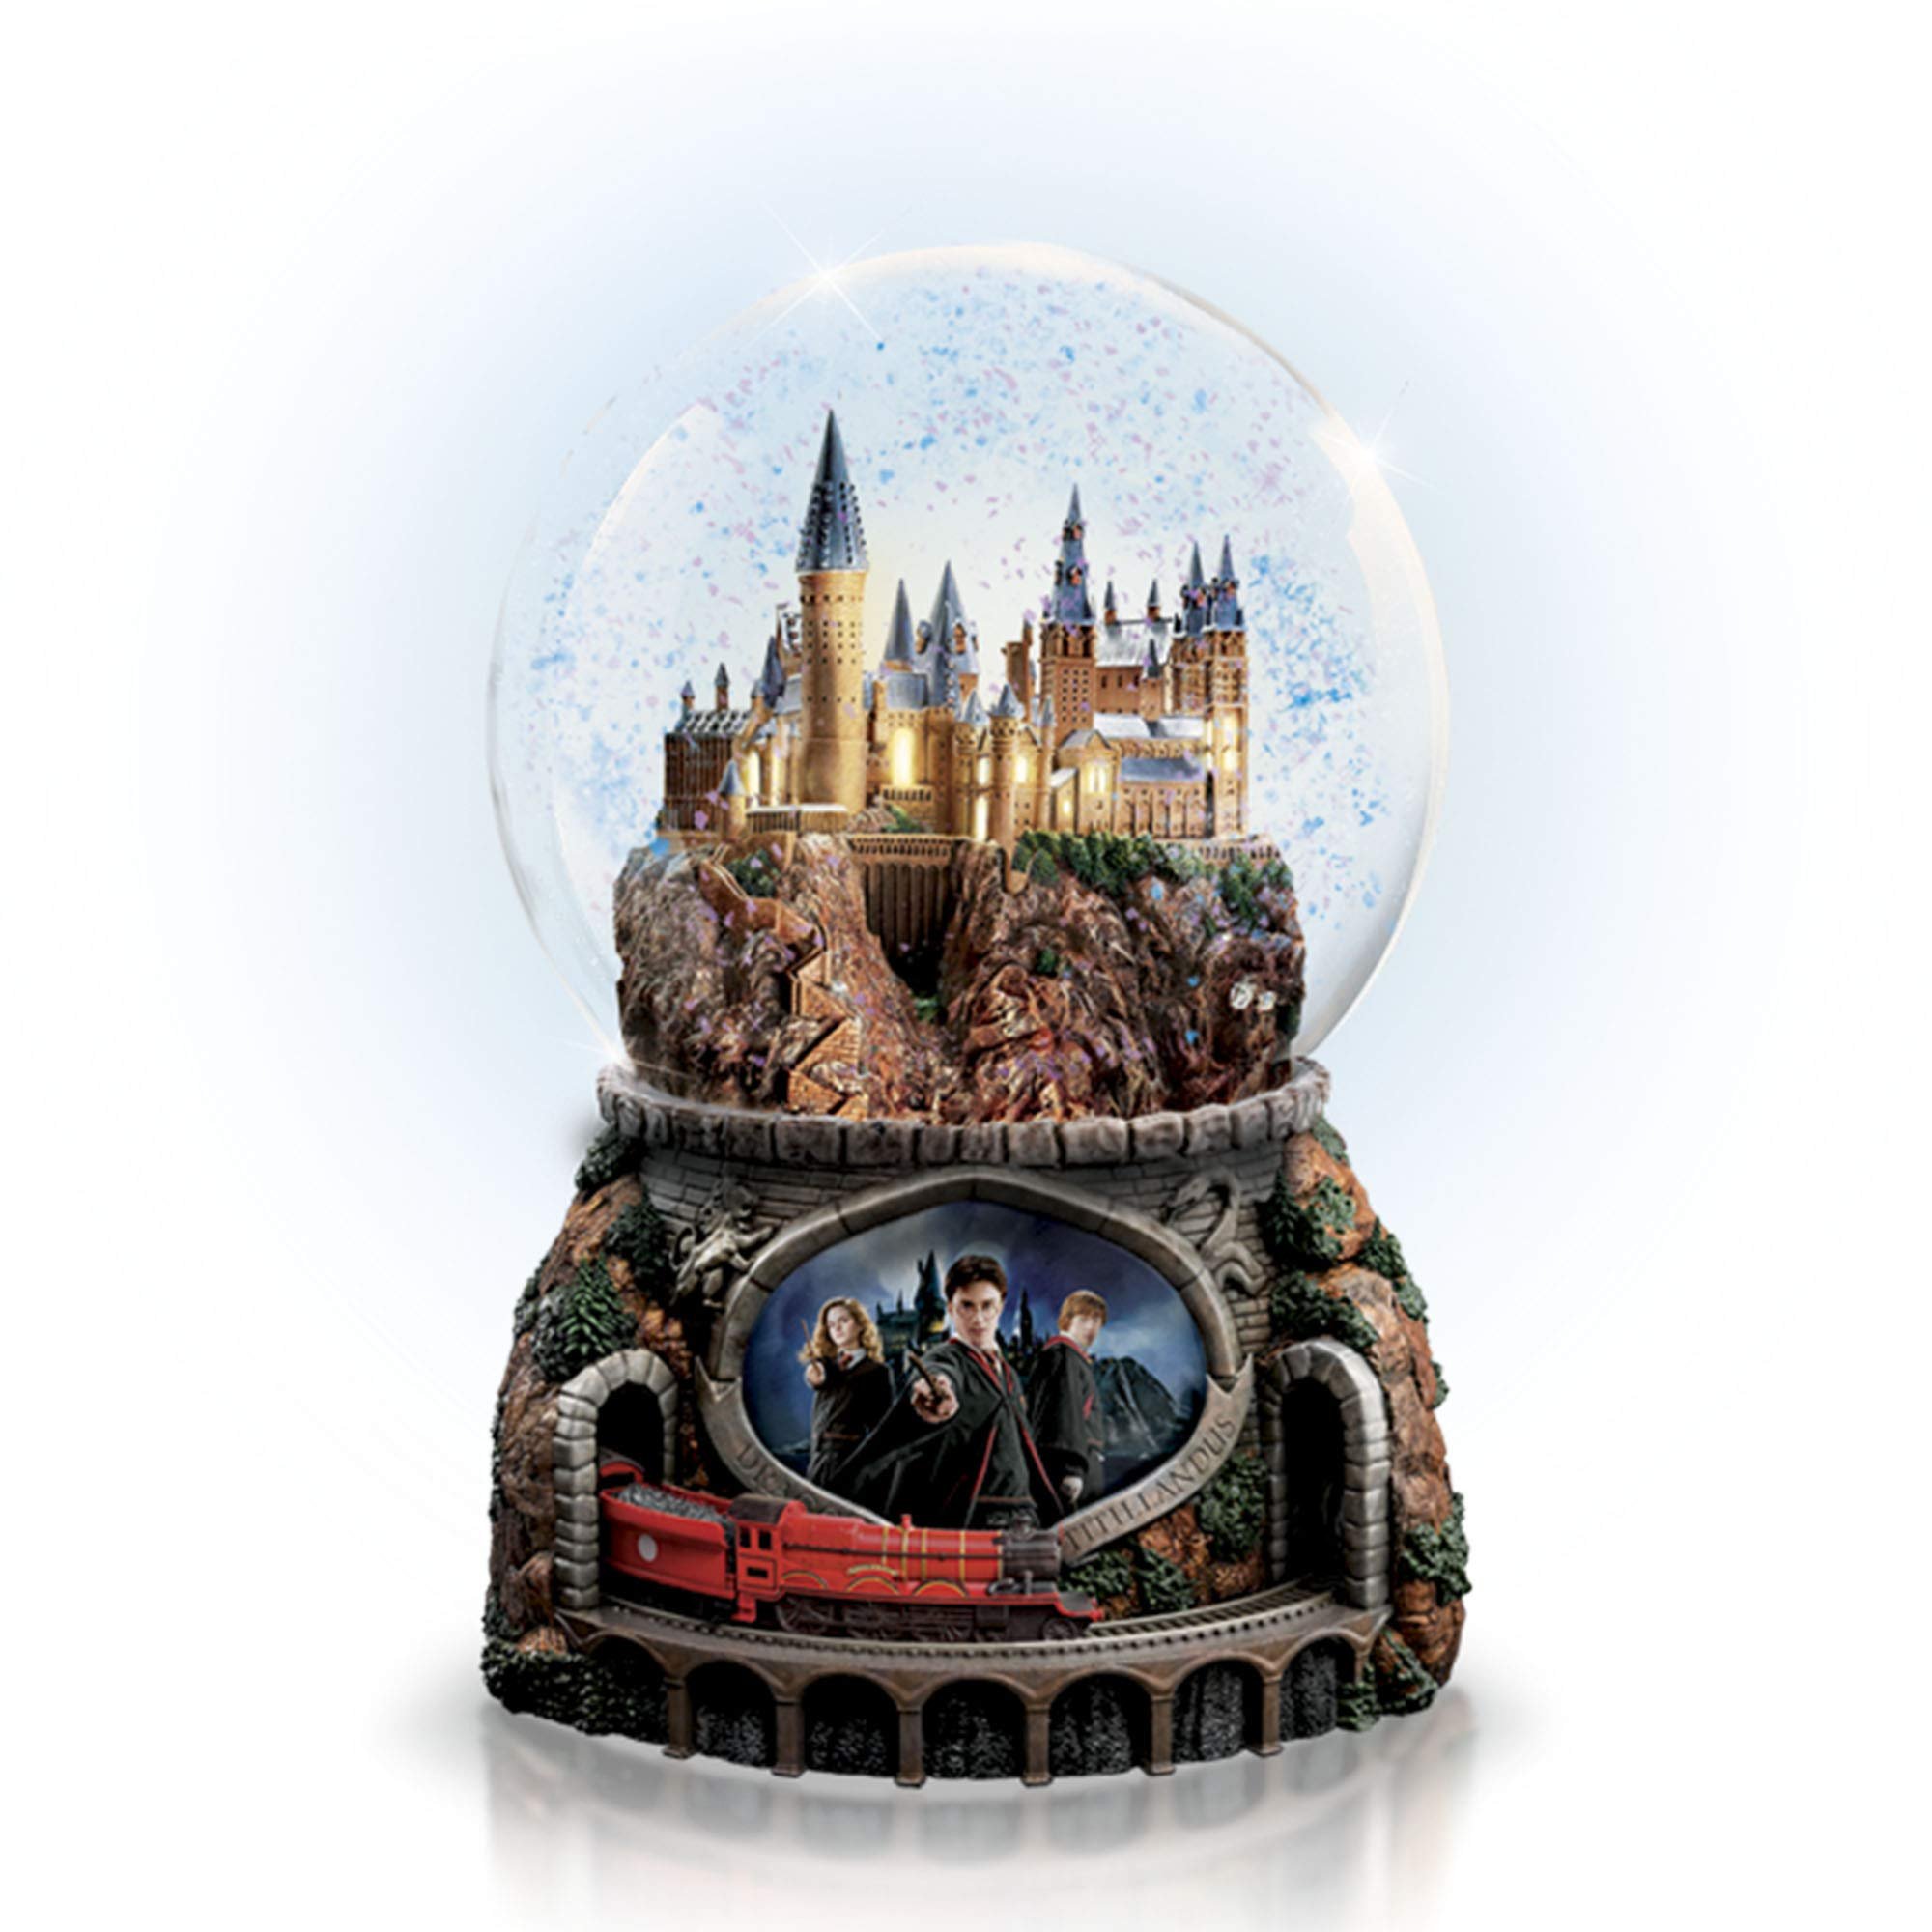 Хогвартс в шаре. Снежный шар с Хогвартсом. Стеклянный шар Хогвартс. Хогвартс в стеклянном шаре.